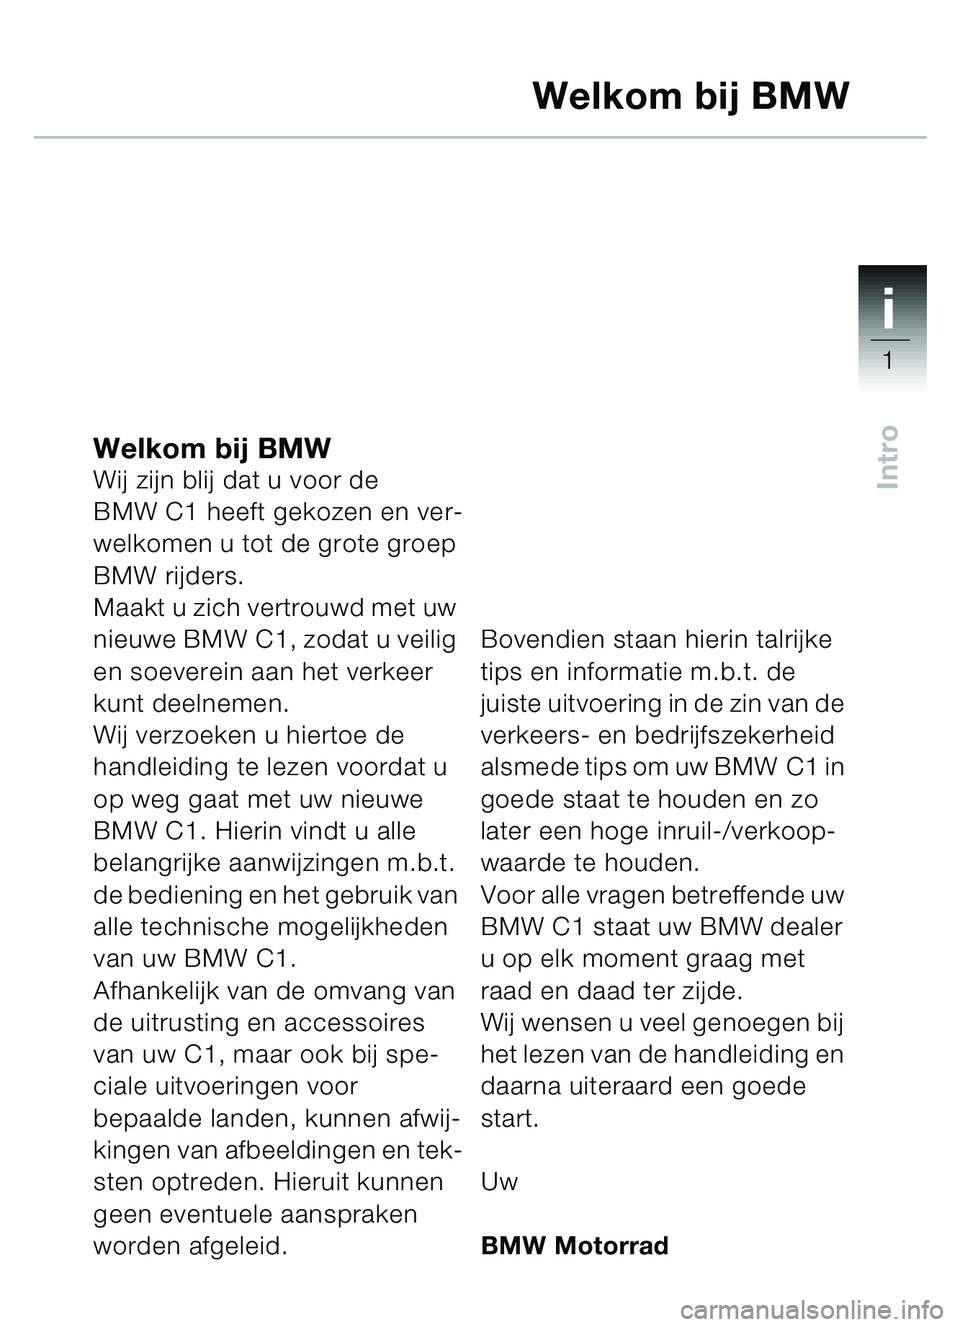 BMW MOTORRAD C1 2000  Handleiding (in Dutch) 1i
1
Intro
Welkom bij BMWWij zijn blij dat u voor de 
BMW C1 heeft gekozen en ver-
welkomen u tot de grote groep 
BMW rijders.
Maakt u zich vertrouwd met uw 
nieuwe BMW C1, zodat u veilig 
en soeverei